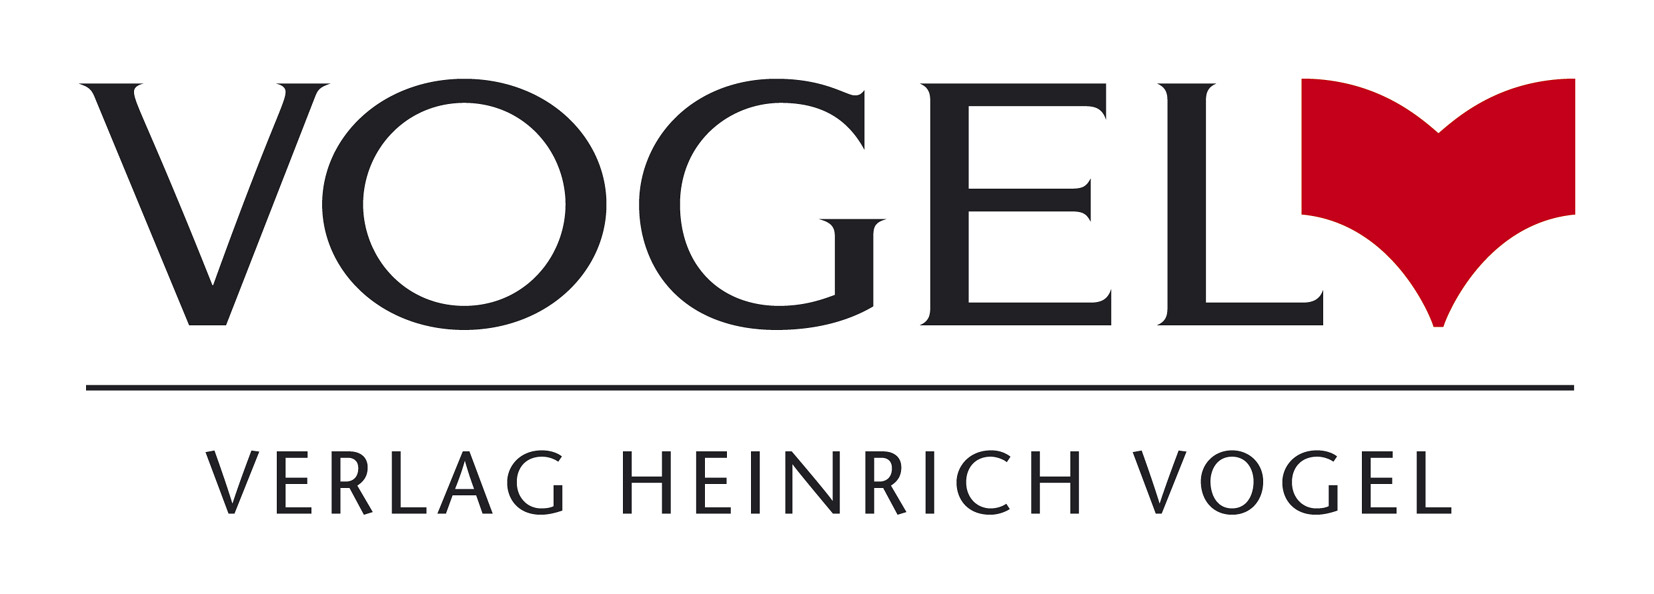 Verlag Heinrich Vogel Logo photo - 1